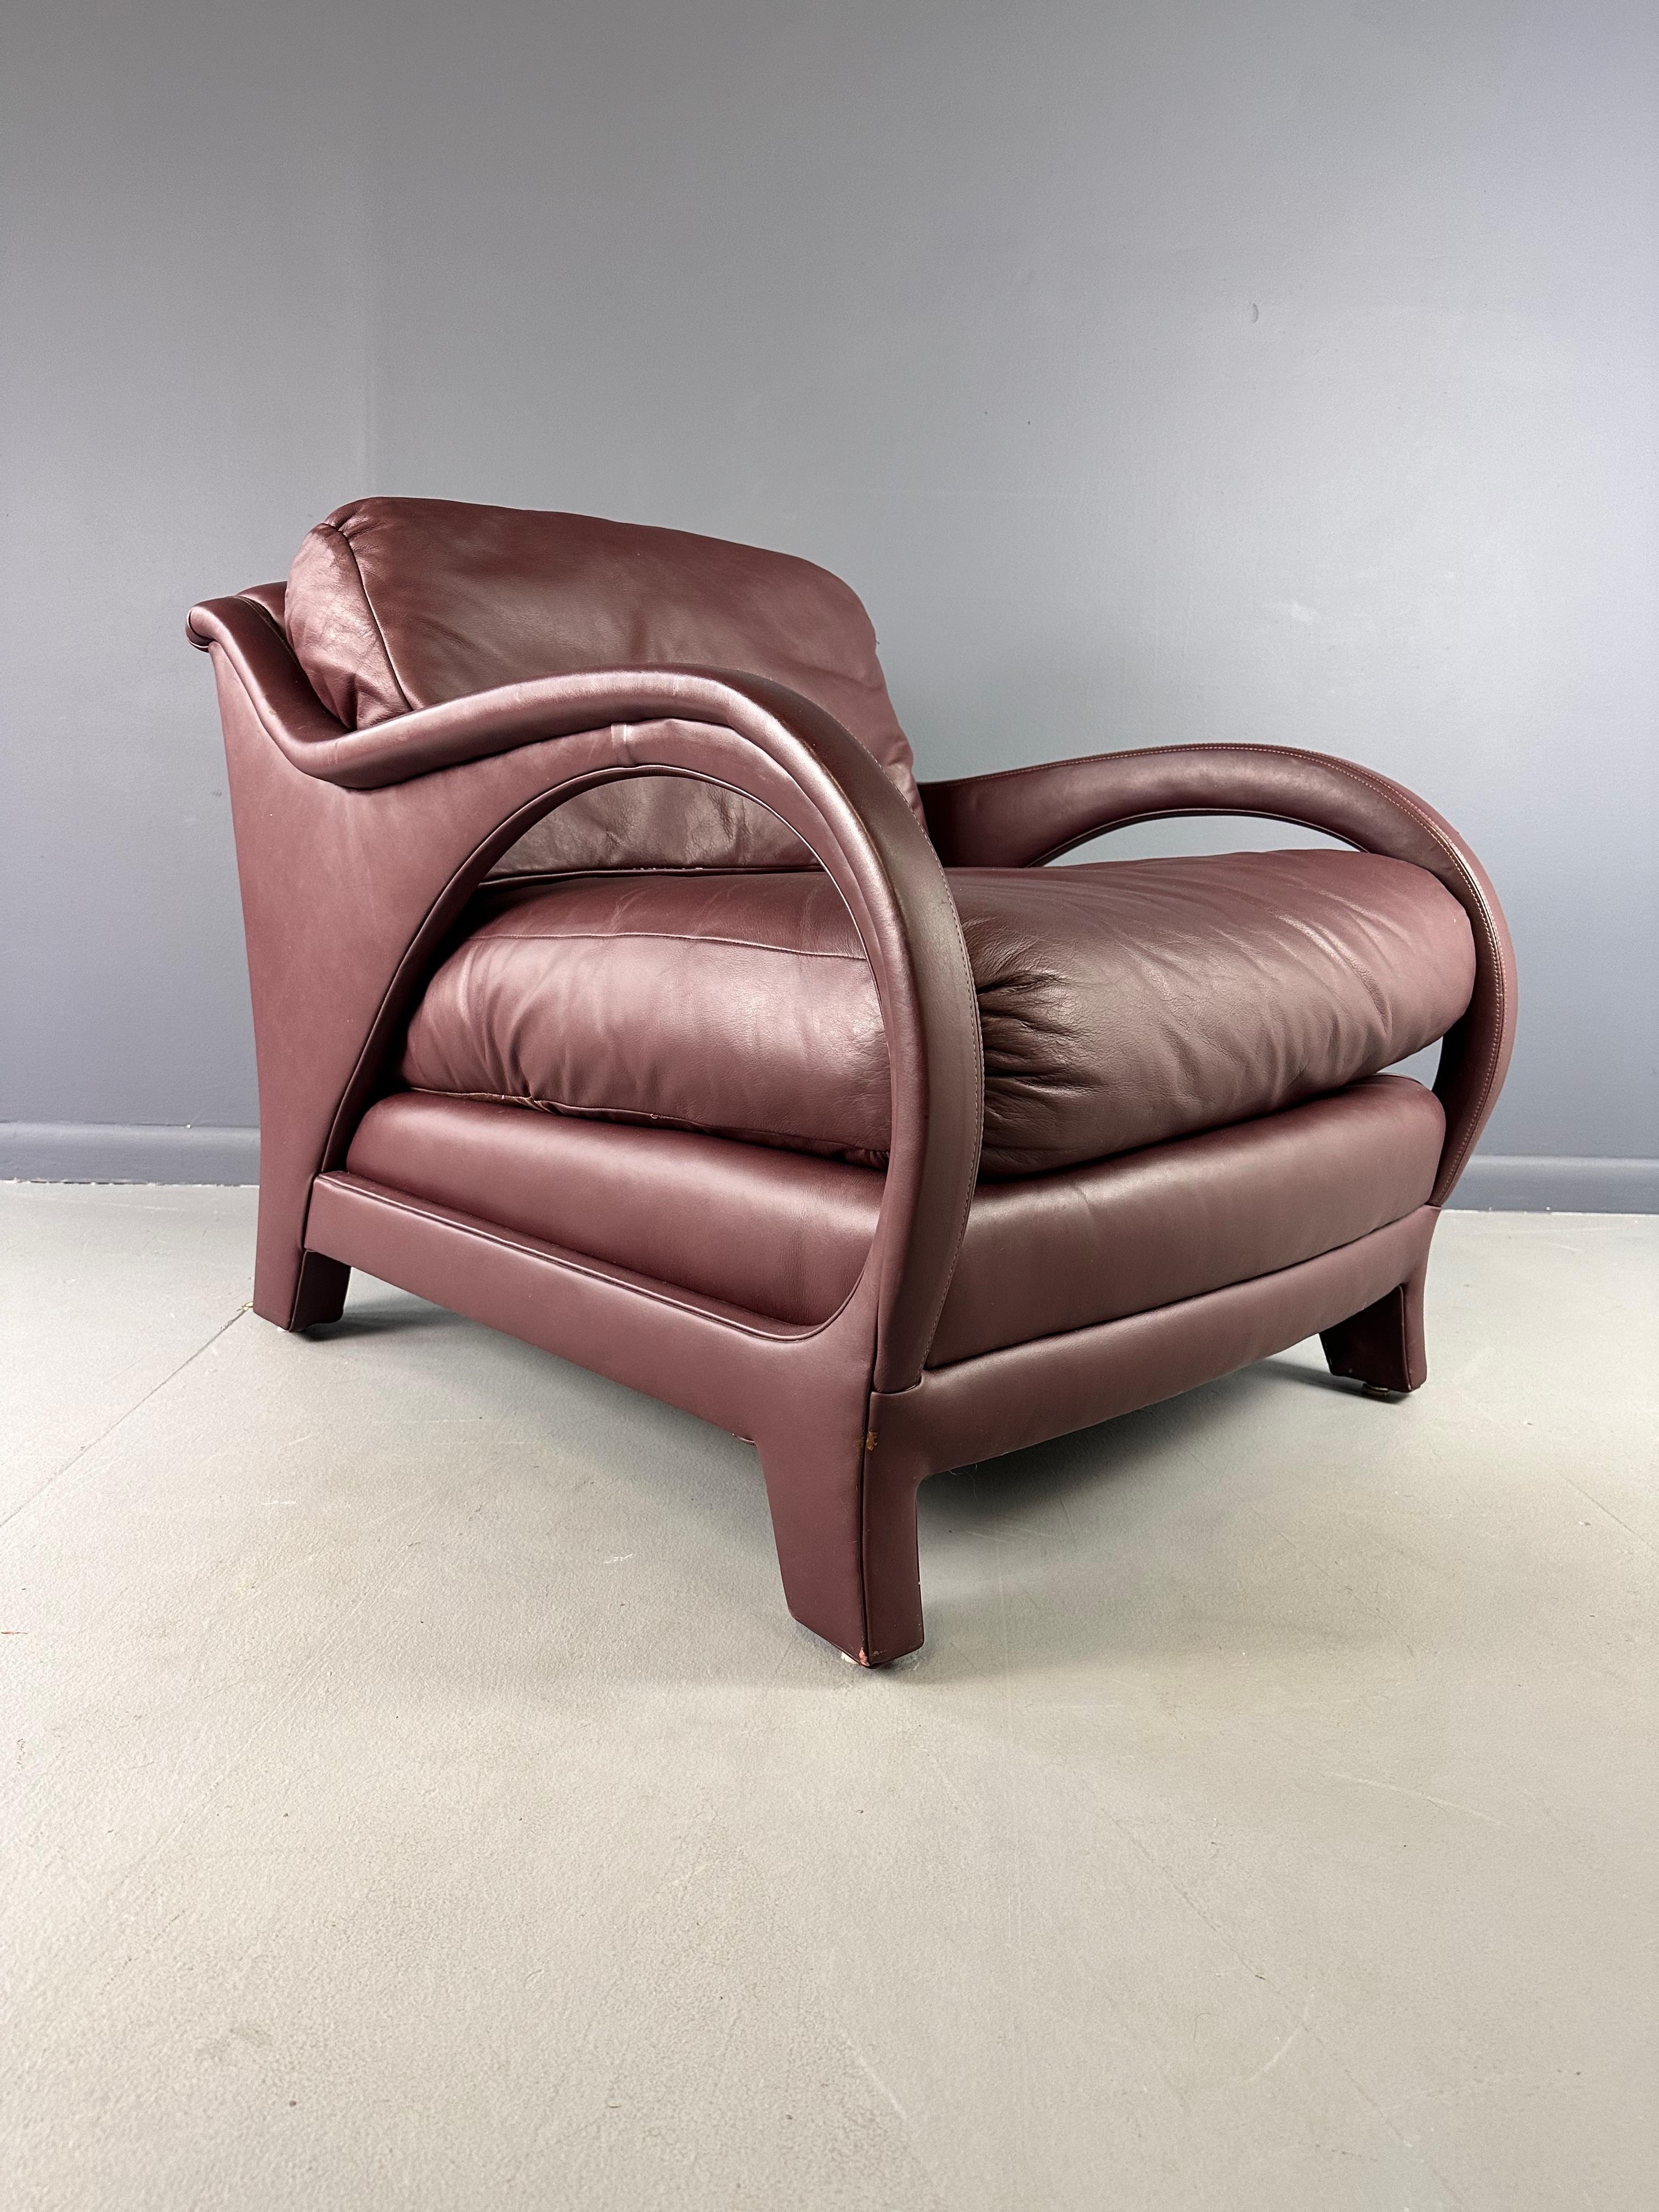 Cette chaise longue en cuir Jay Spectre Tycoon, de couleur bourgogne, est le complément idéal de tout espace de vie ou de bureau haut de gamme. Fabriquée par le célèbre designer Jay Spectre, cette chaise offre un design luxueux et épuré, avec un